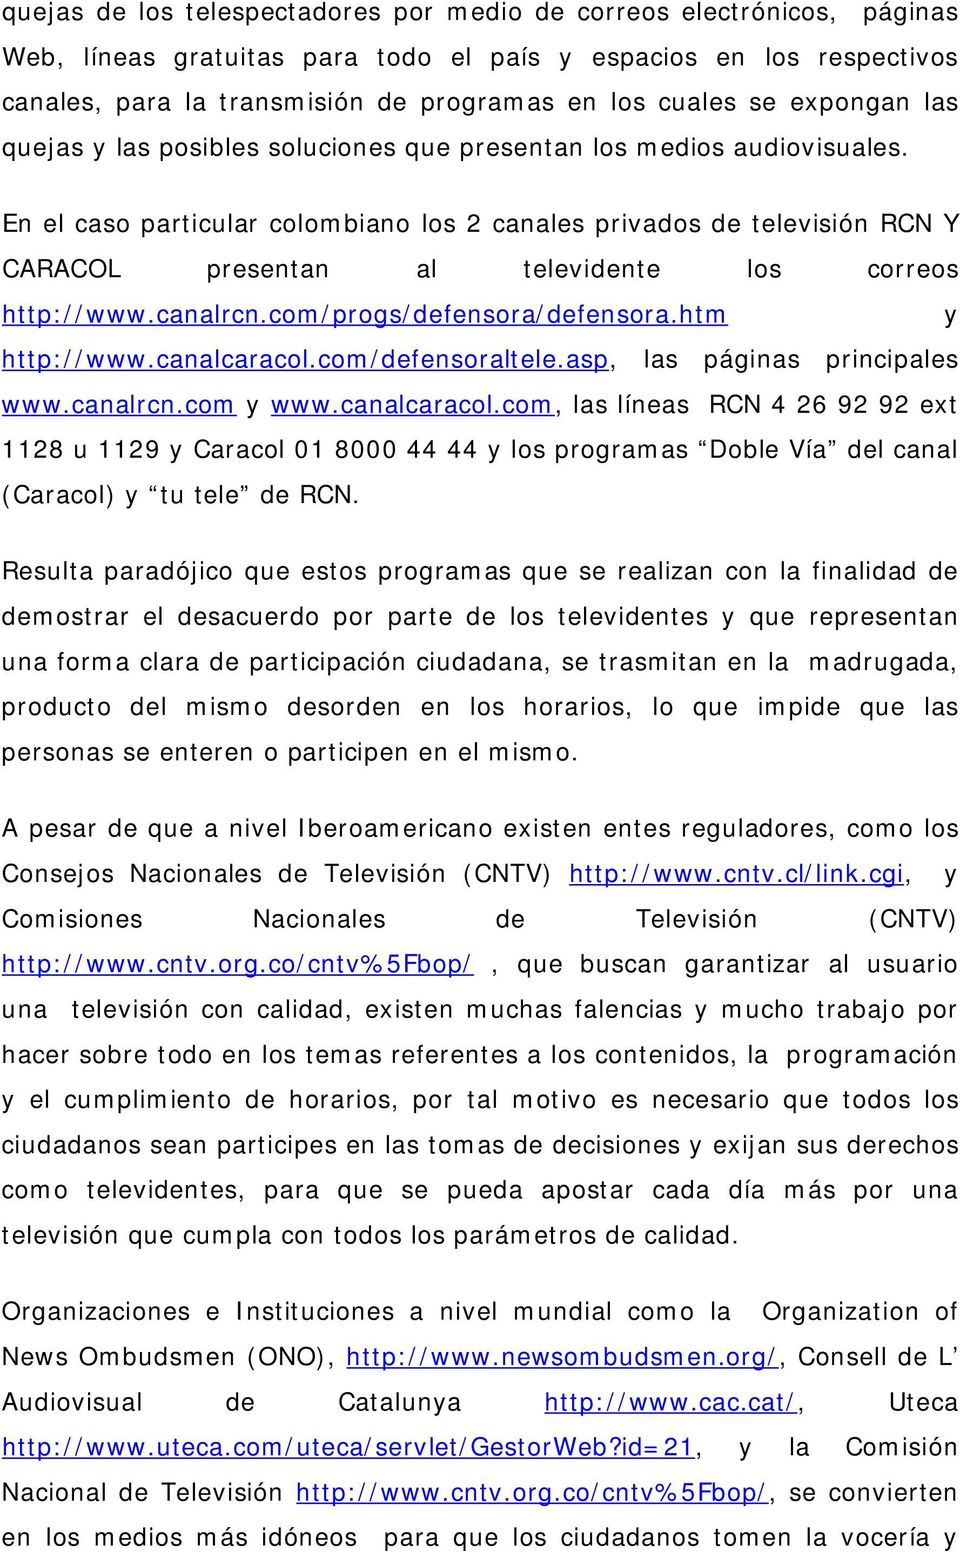 En el caso particular colombiano los 2 canales privados de televisión RCN Y CARACOL presentan al televidente los correos http://www.canalrcn.com/progs/defensora/defensora.htm y http://www.